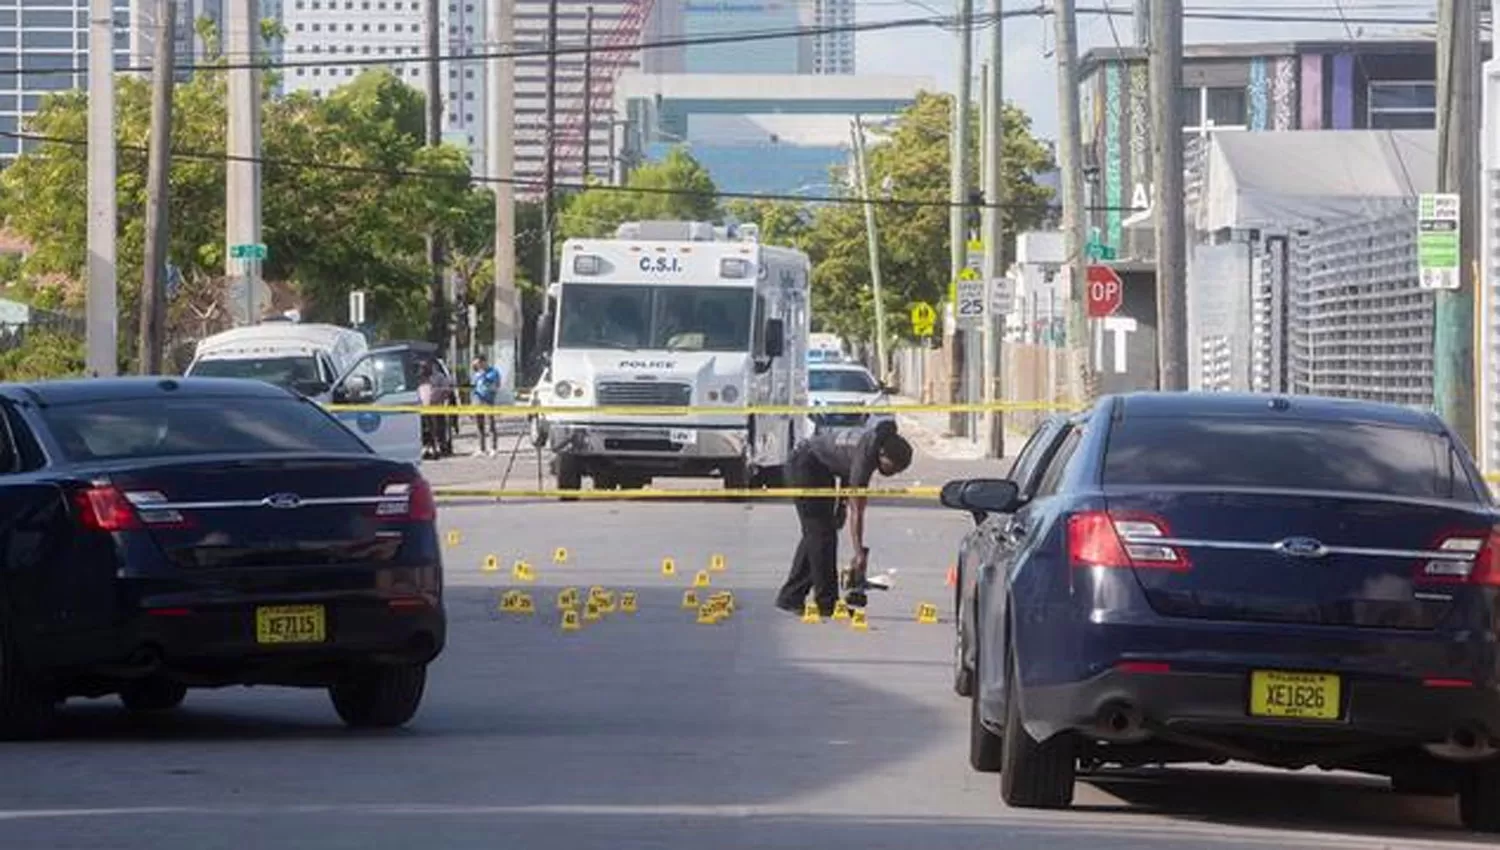 LA ESCENA. Las vainas servidas quedaron desparramadas en el pavimiento a la salida del local atacado en Miami.